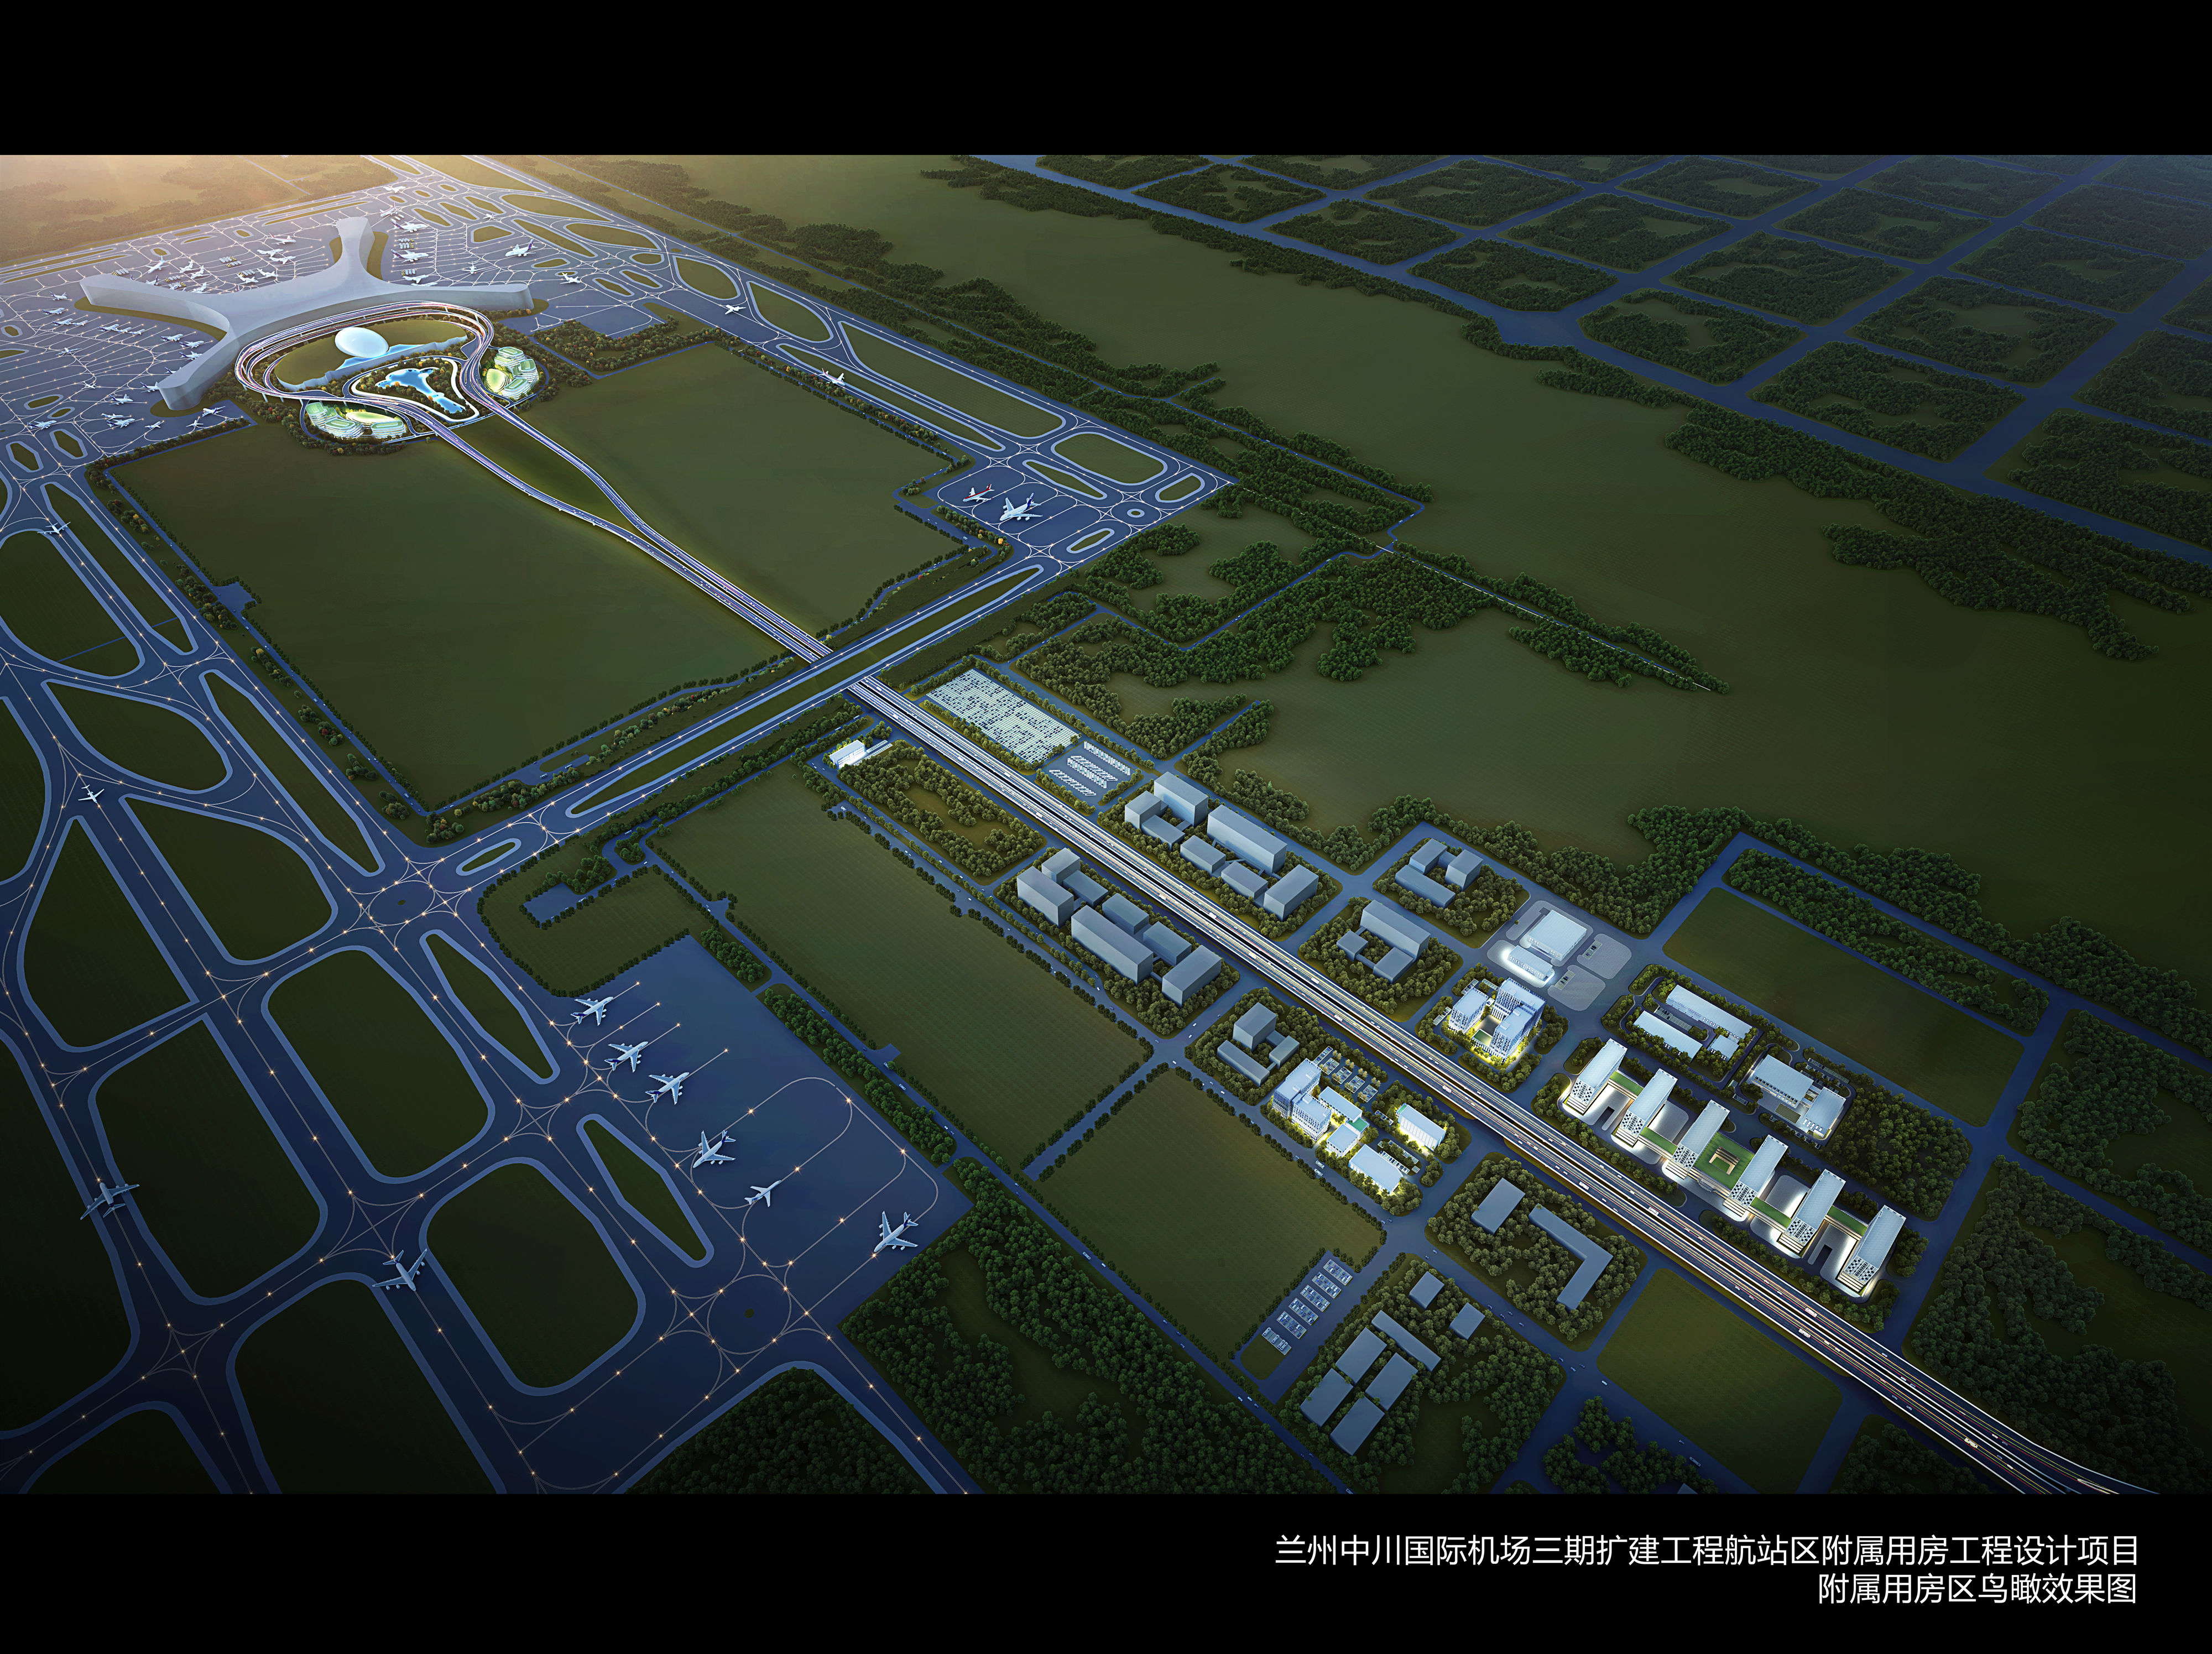 设计再提速 质量再提升<br/>——兰州中川国际机场三期扩建工程航站区附属用房工程<br/>设计项目取得阶段性成果